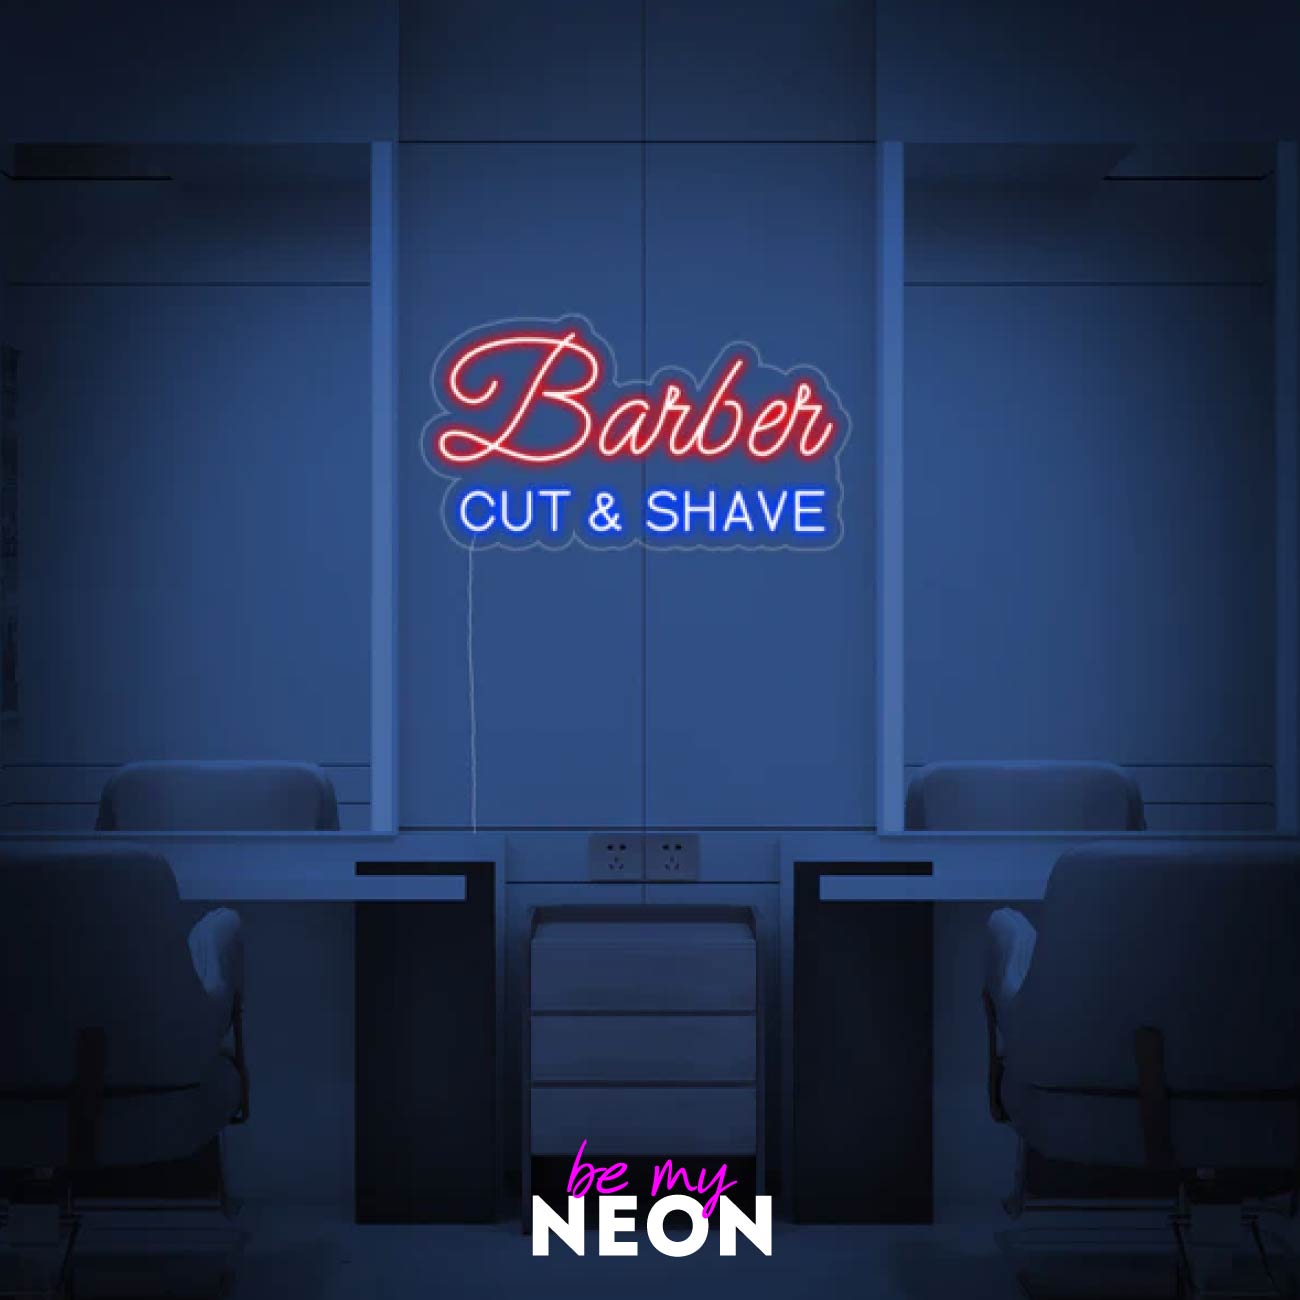 "Barber CUT SHAVE - Friseur" LED Neonschild